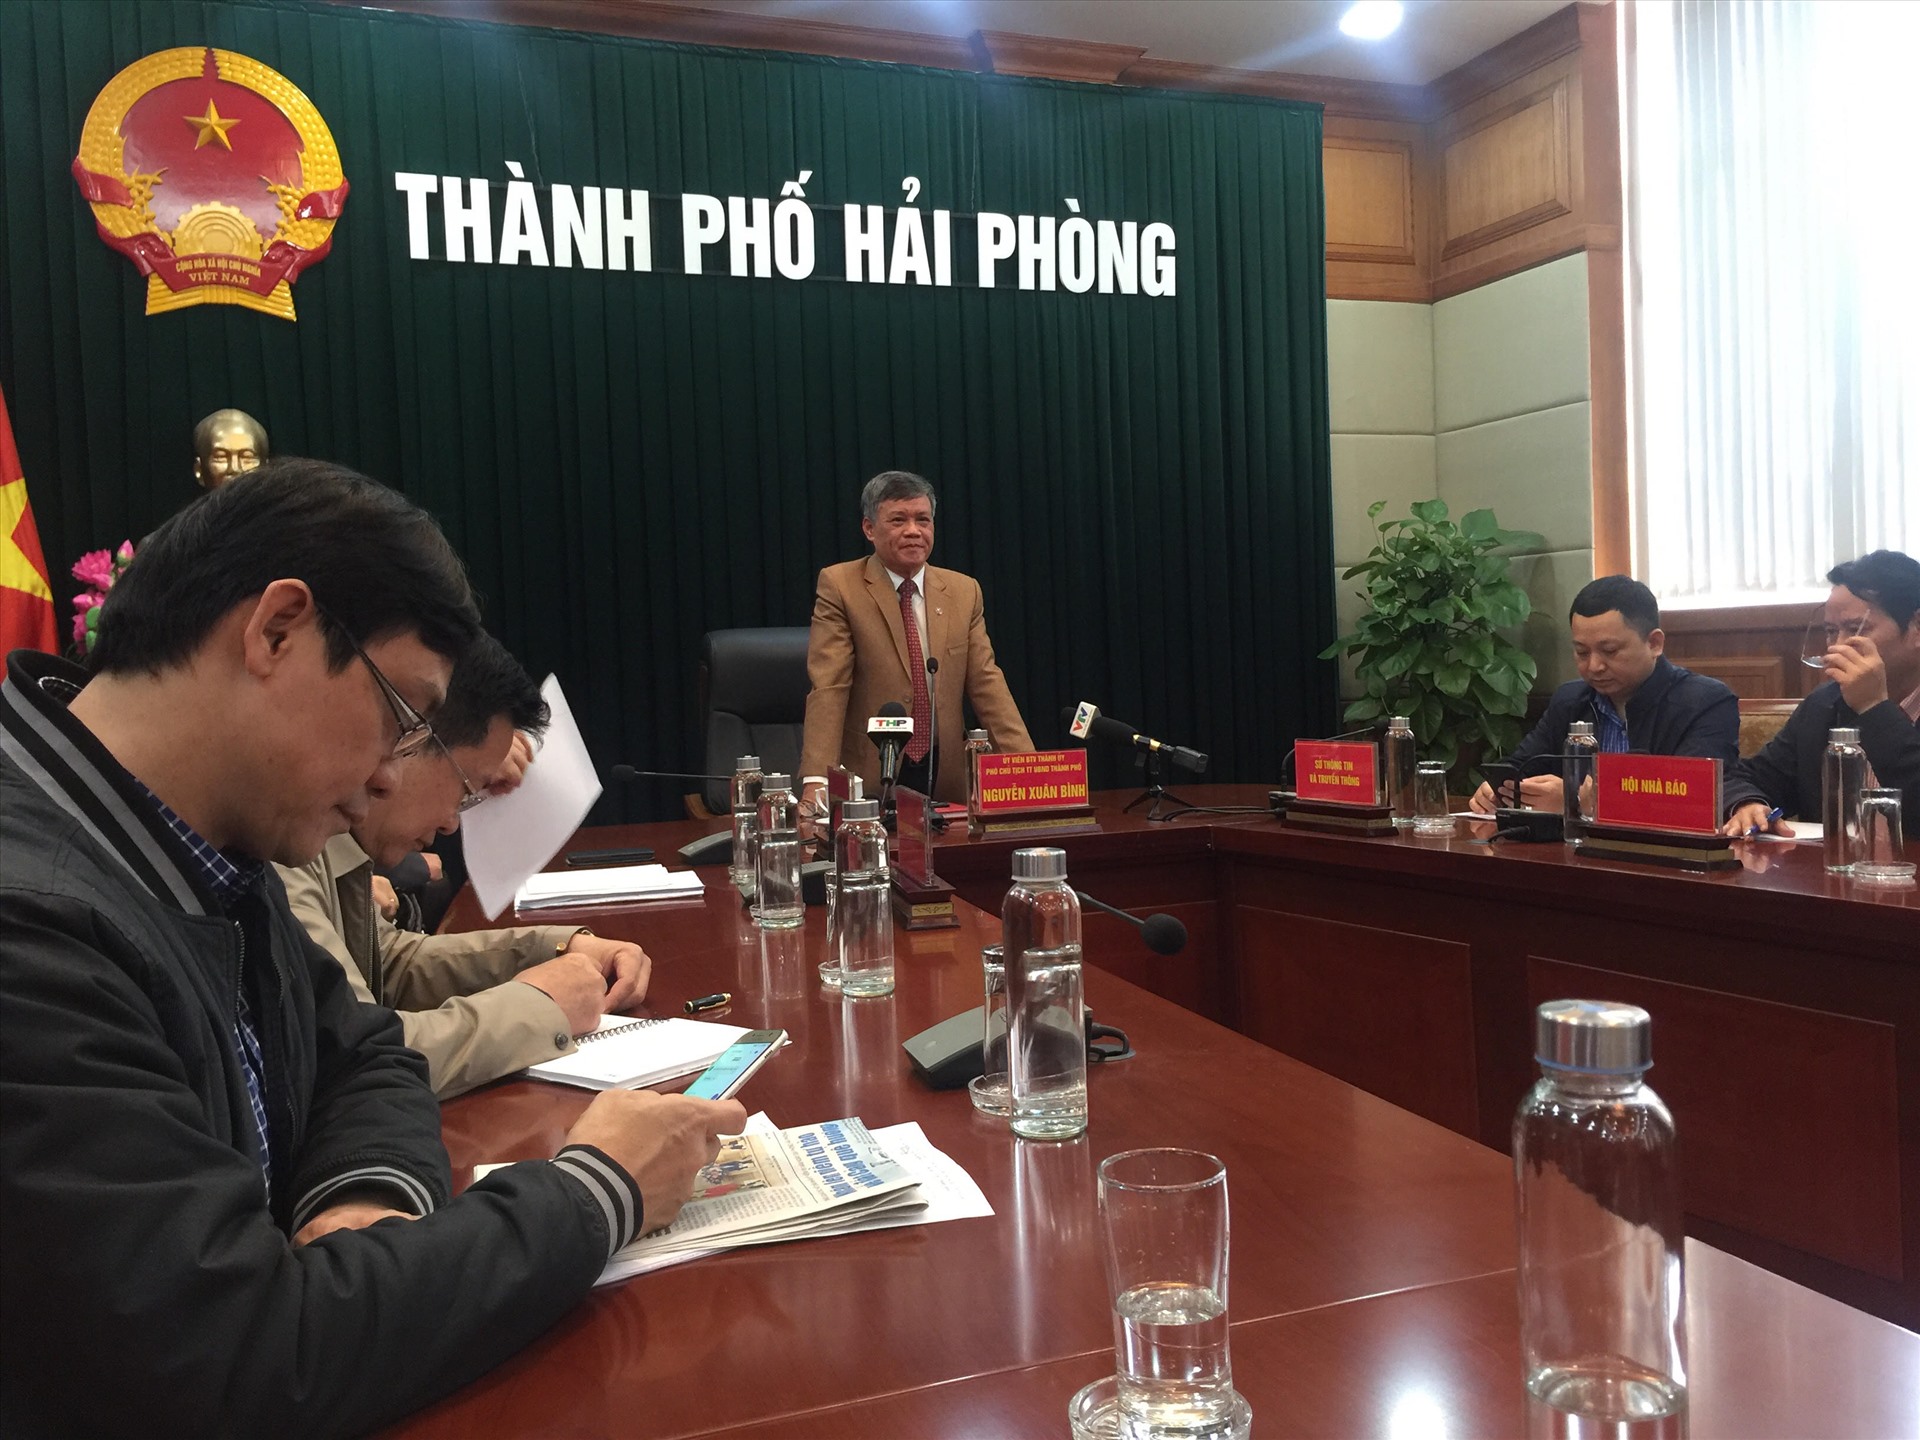 Ông Nguyễn Xuân Bình - Phó Chủ tịch thường trực UBND TP Hải Phòng thông tin về việc mua cốc chén tặng người dân - ảnh PV